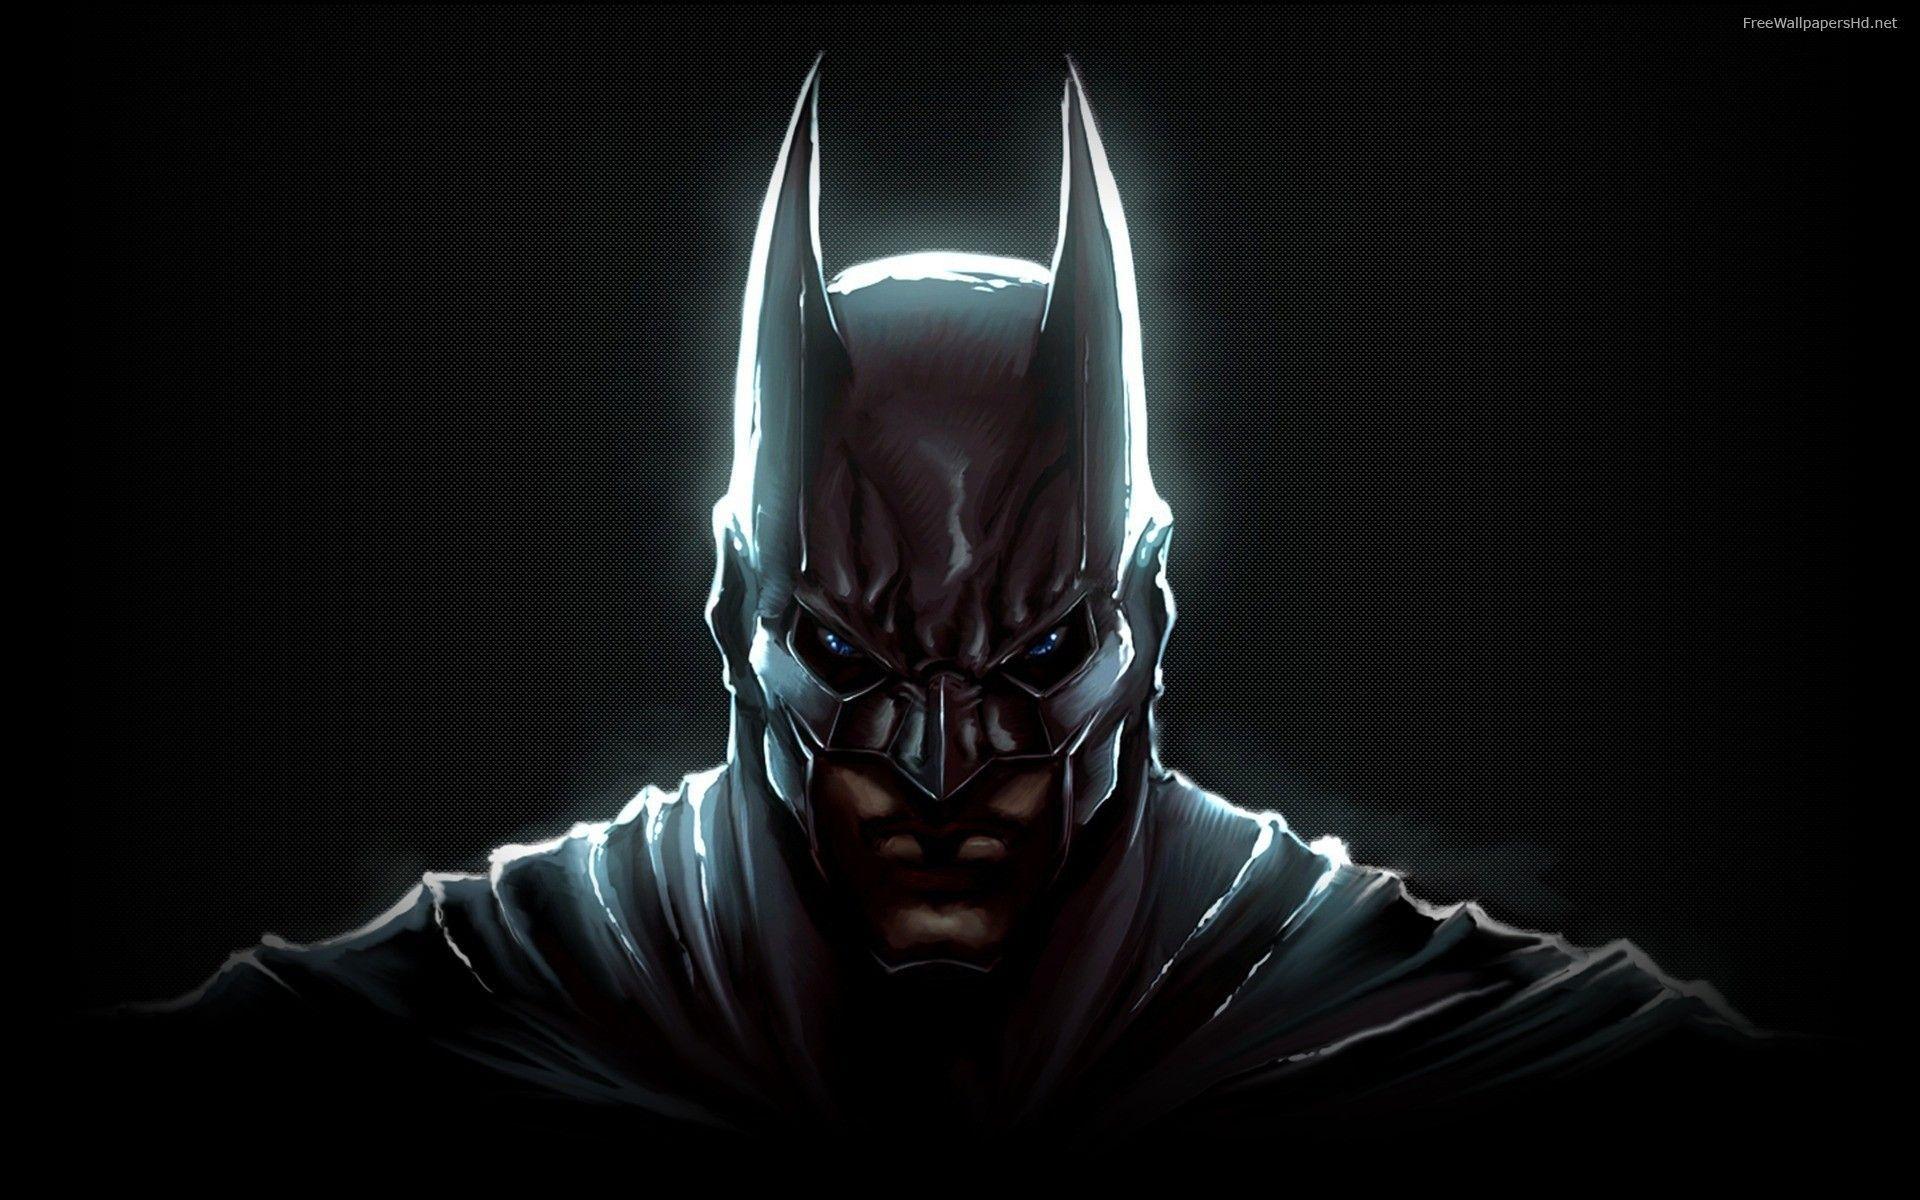 Enjoy this new Batman desktop background